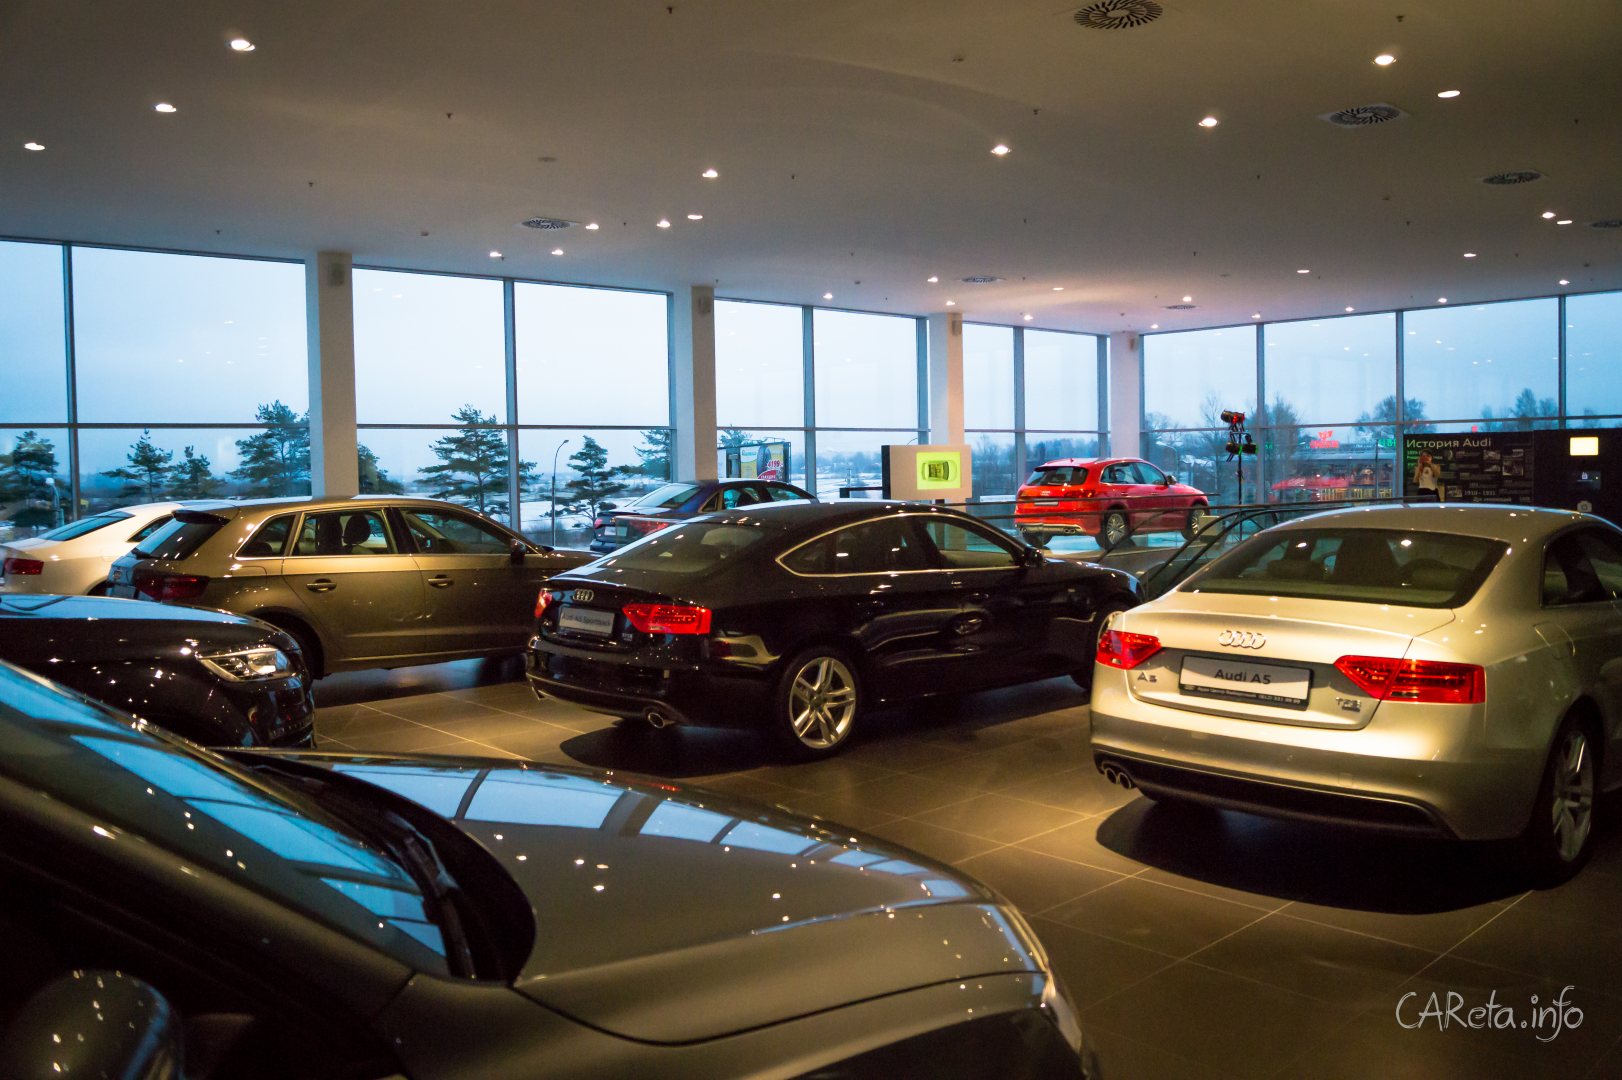 Audi Центр Выборгский: Терминал в мир Audi